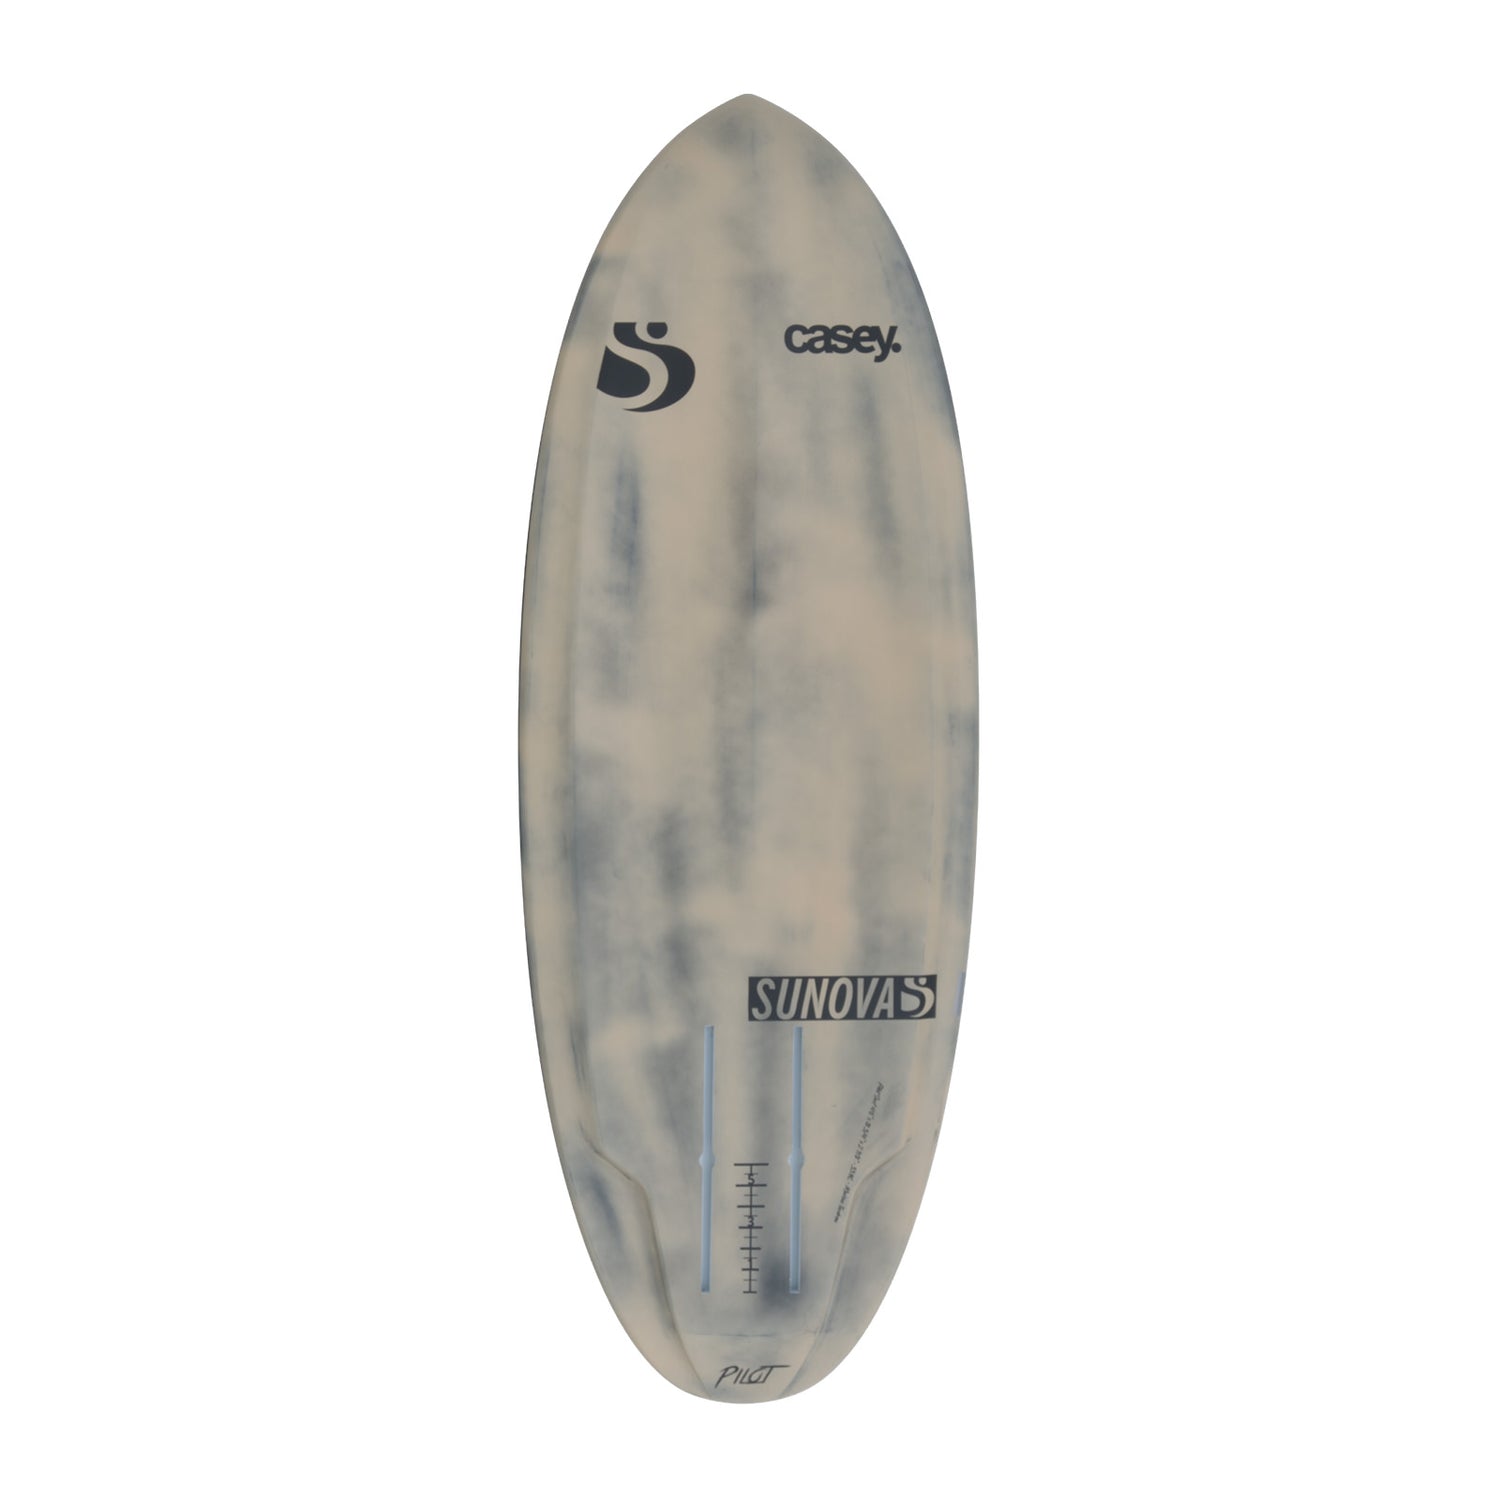 Ansicht der Unterseite des Sunova Casey Pilot Surf Pronefoil Board in der CarbonTec Bauweise.